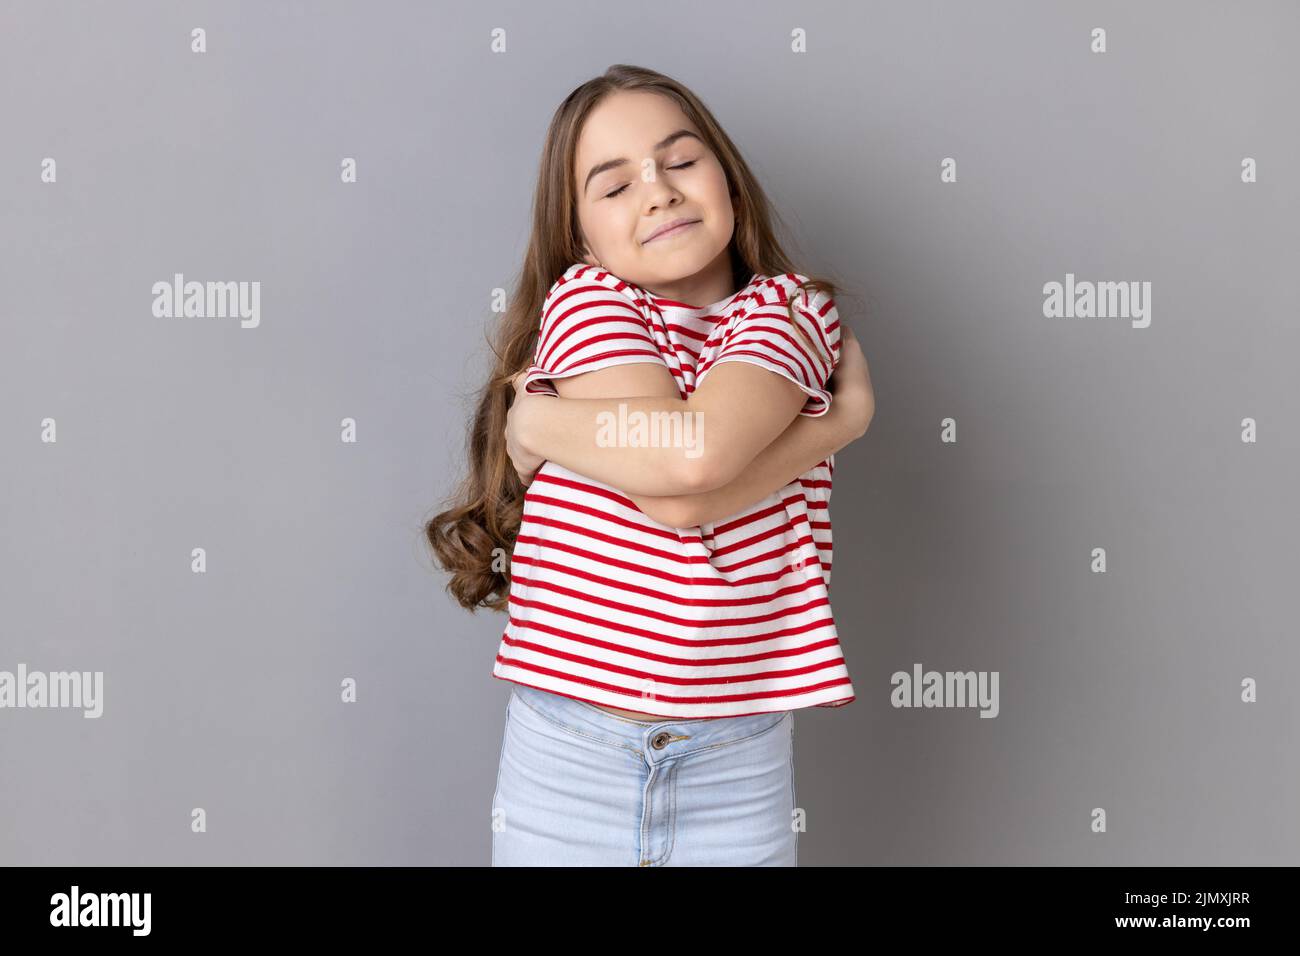 Je m'aime. Portrait d'une petite fille égoiste satisfaite de soi portant un T-shirt rayé s'embrassant et souriant avec plaisir, se sentant fierté de soi. Prise de vue en studio isolée sur fond gris. Banque D'Images